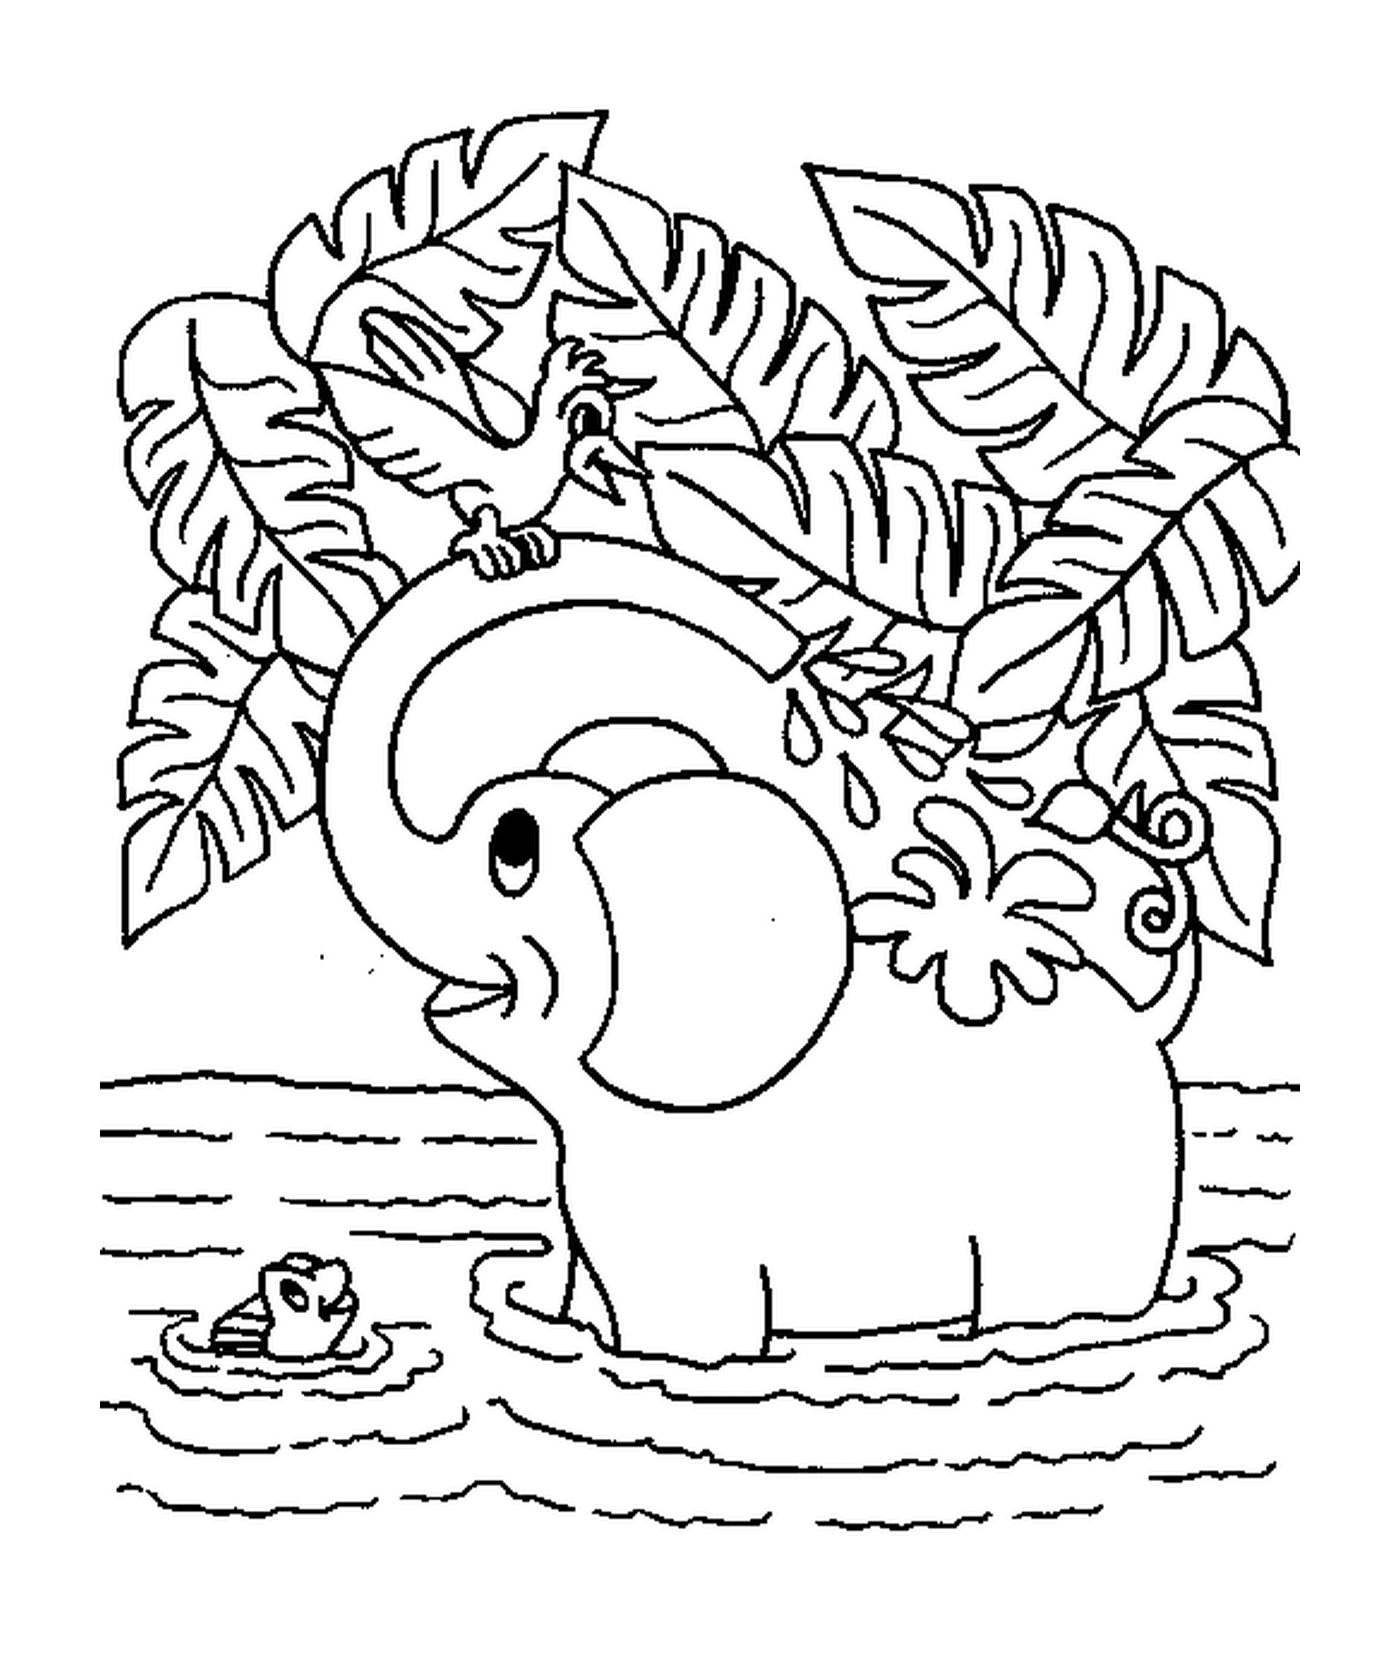  Un elefante lavando en un río 